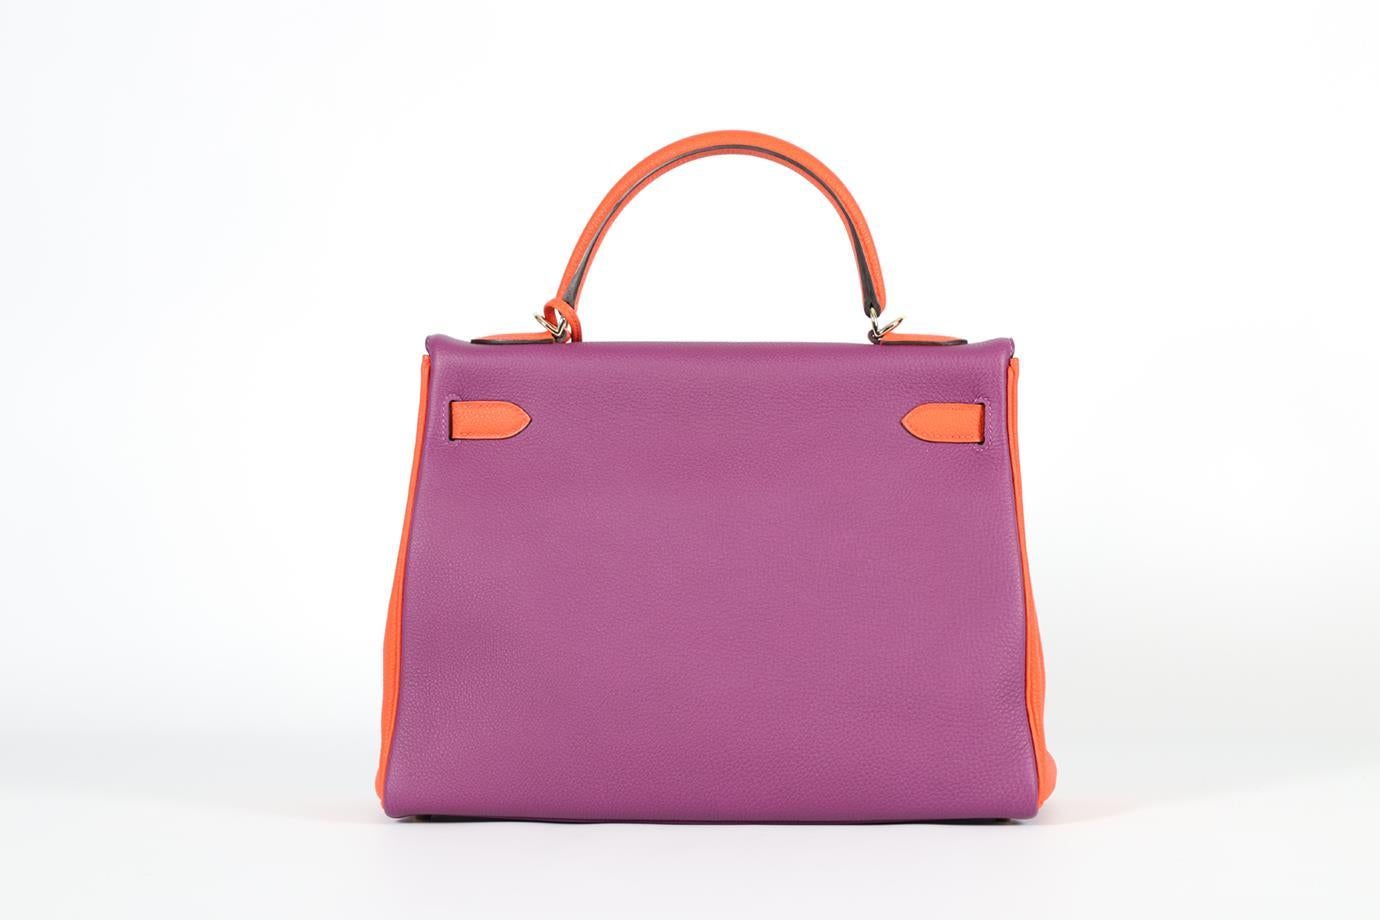 Hermès 2019 Hss Kelly 32cm Togo Leather Bag For Sale 3